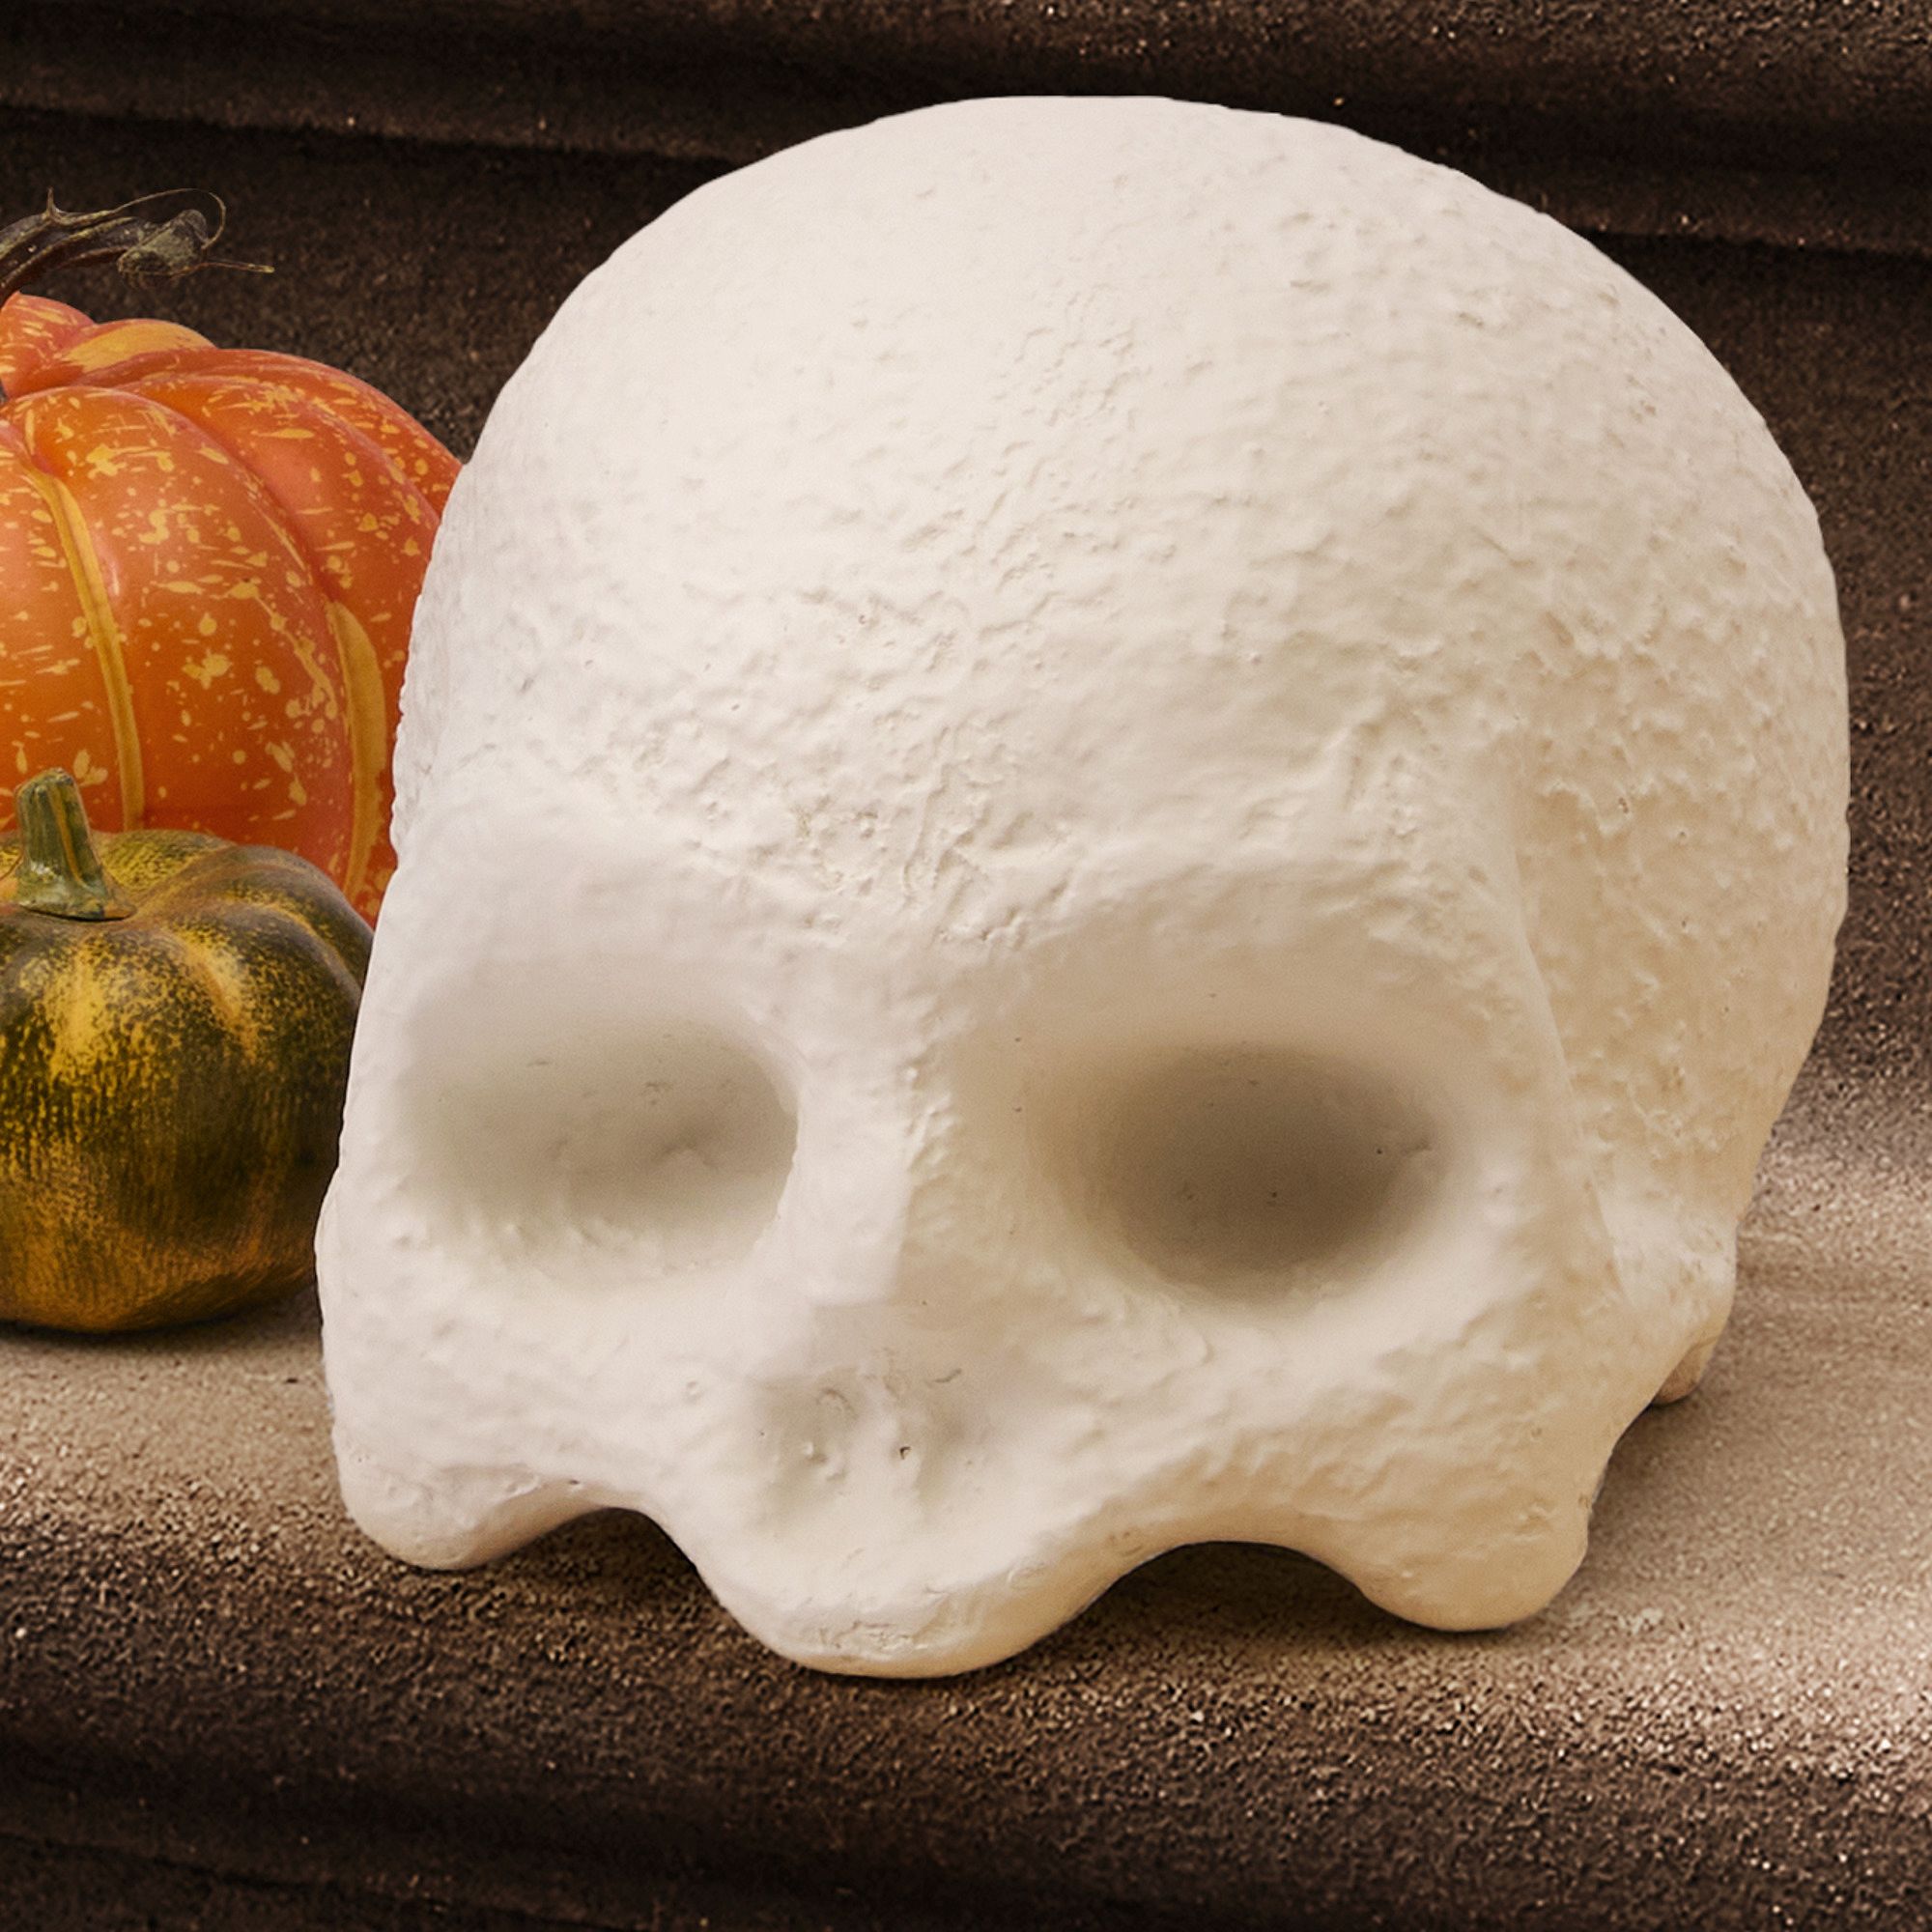 Indoor/Outdoor Skull & Bone Decorative Objects | West Elm